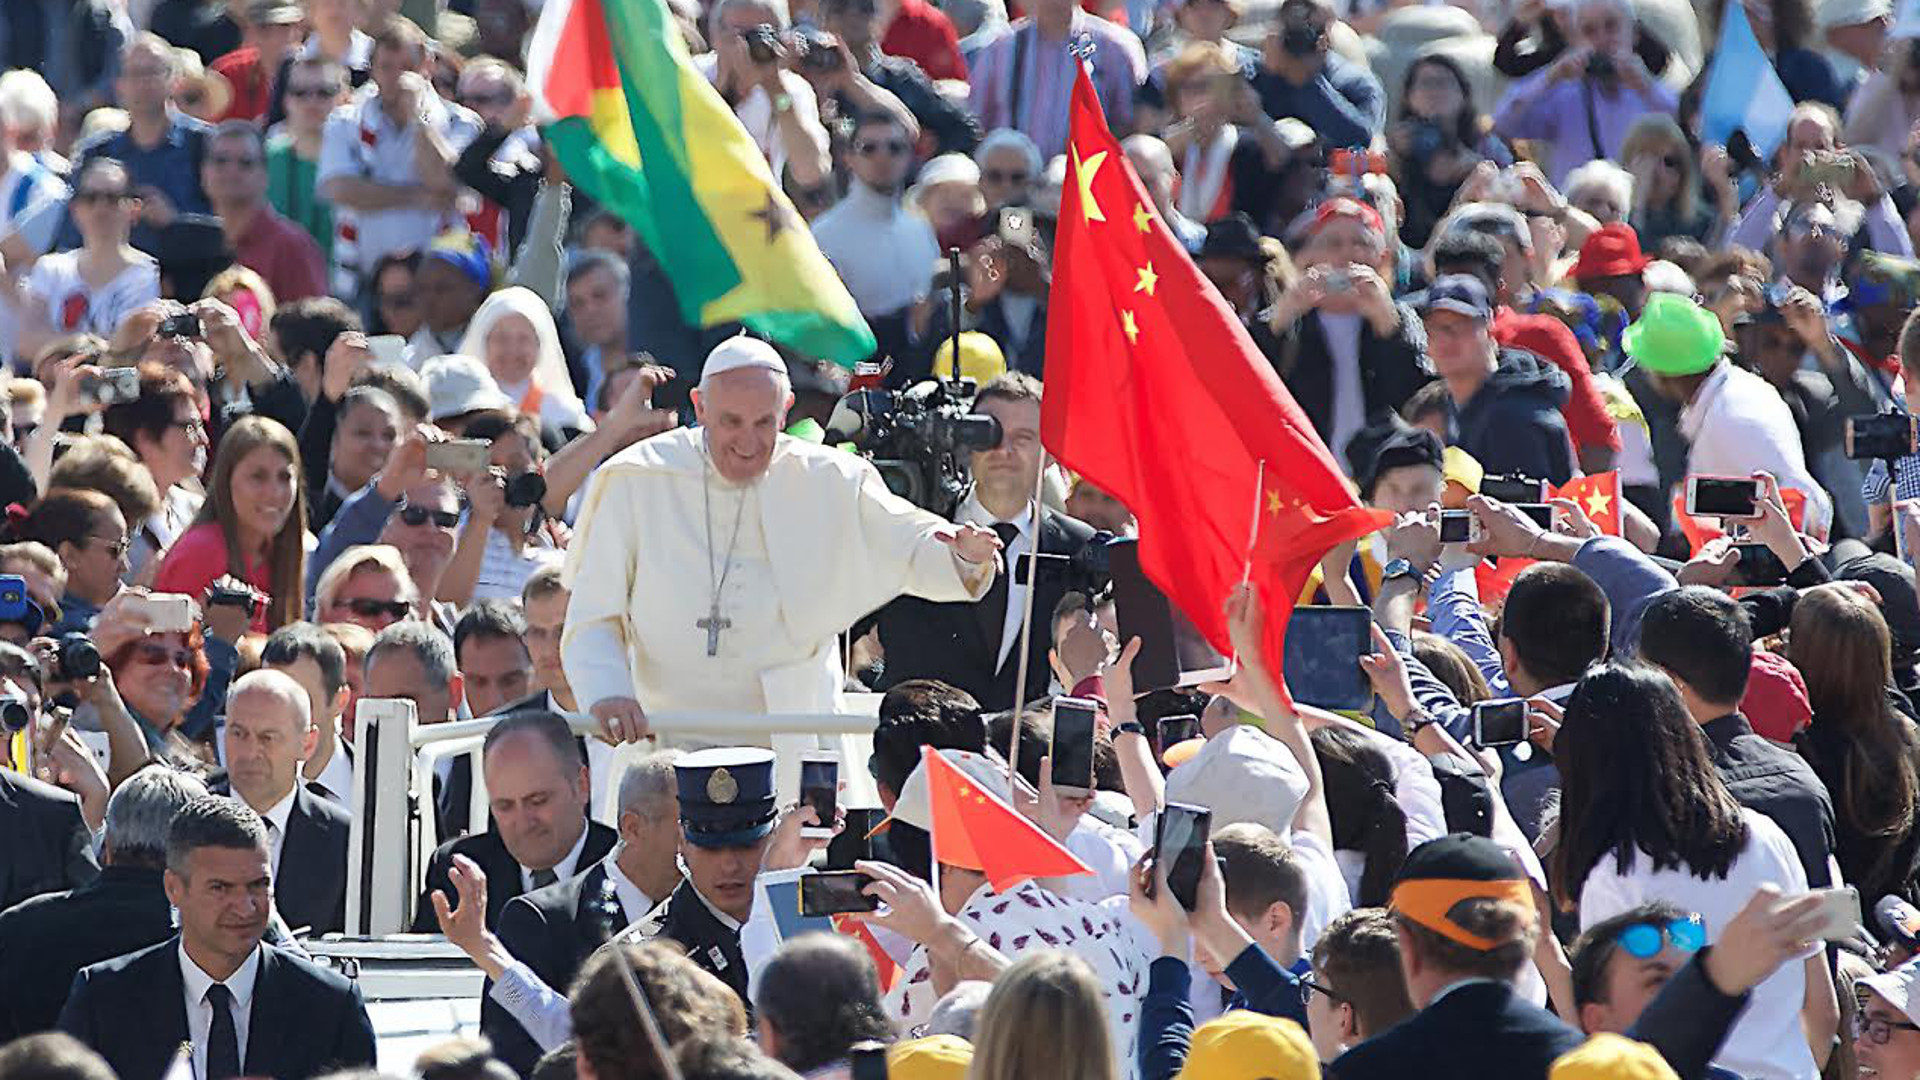 Gläubige schwenken die chinesische Flagge bei einer Generalaudienz von Papst Franziskus im Jahr 2016.